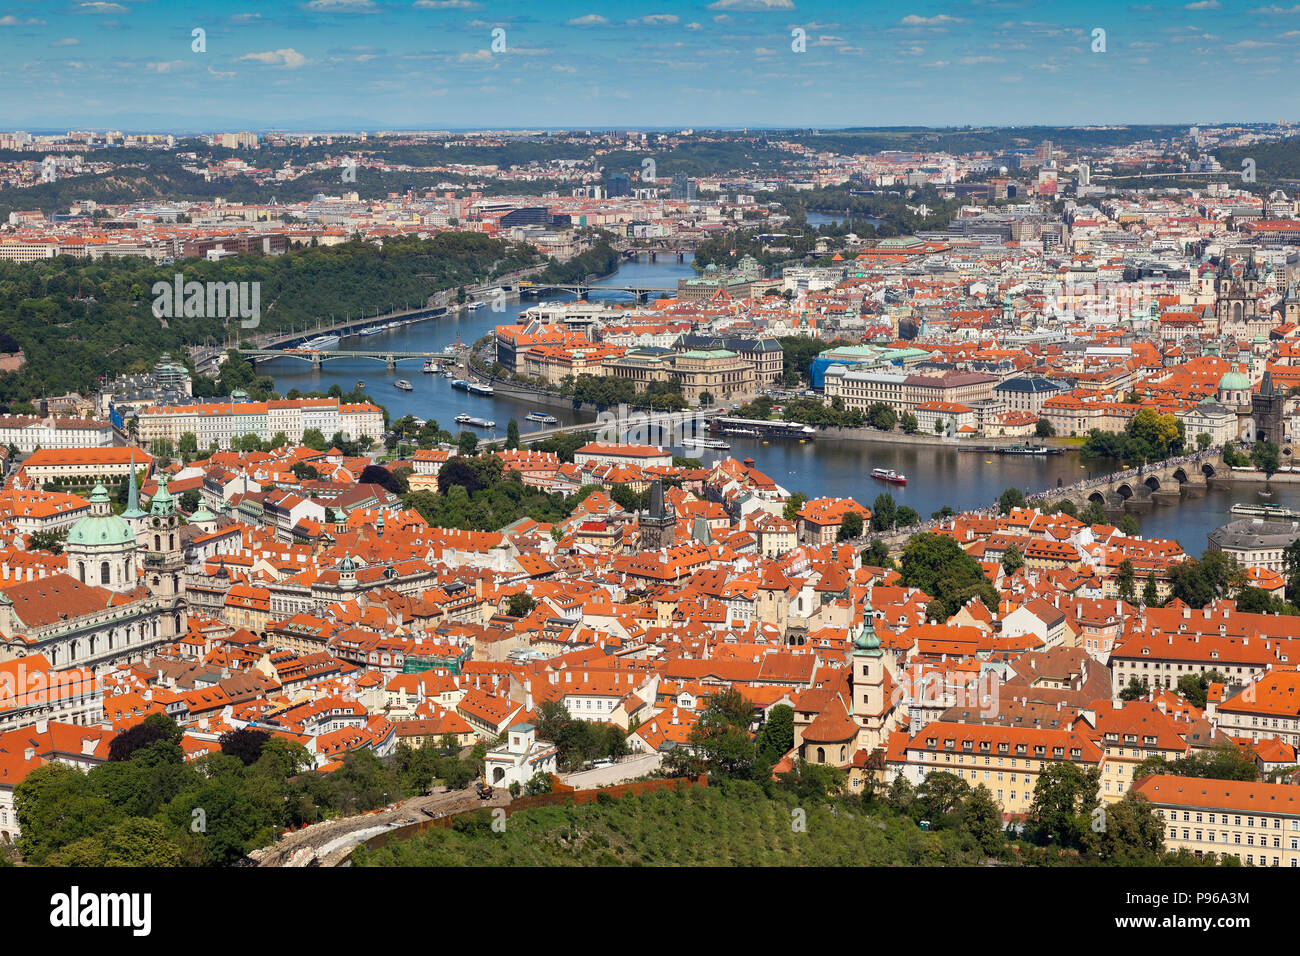 Panorama von Prag in der Nähe des Kloster Strahov, zeigen die vielen Brücken, die Karlsbrücke, beladen mit Touristen, Manesuv Brücke, Cechuv bridg Stockfoto